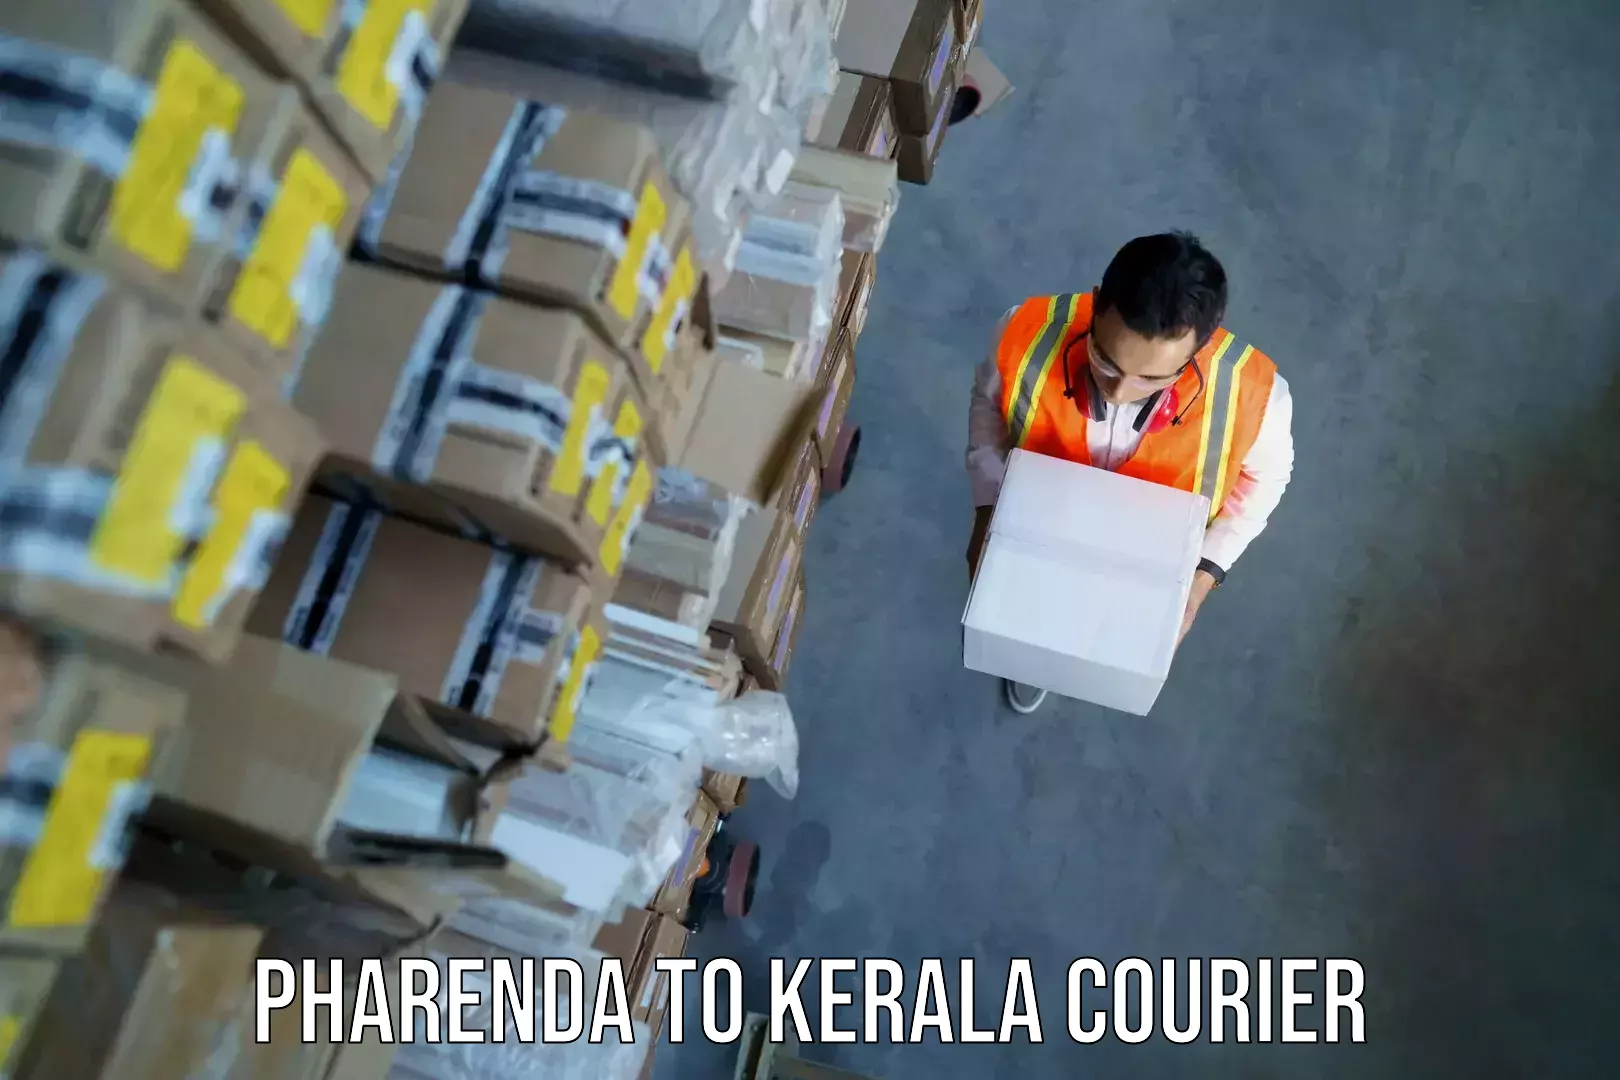 Luggage transit service Pharenda to Kerala